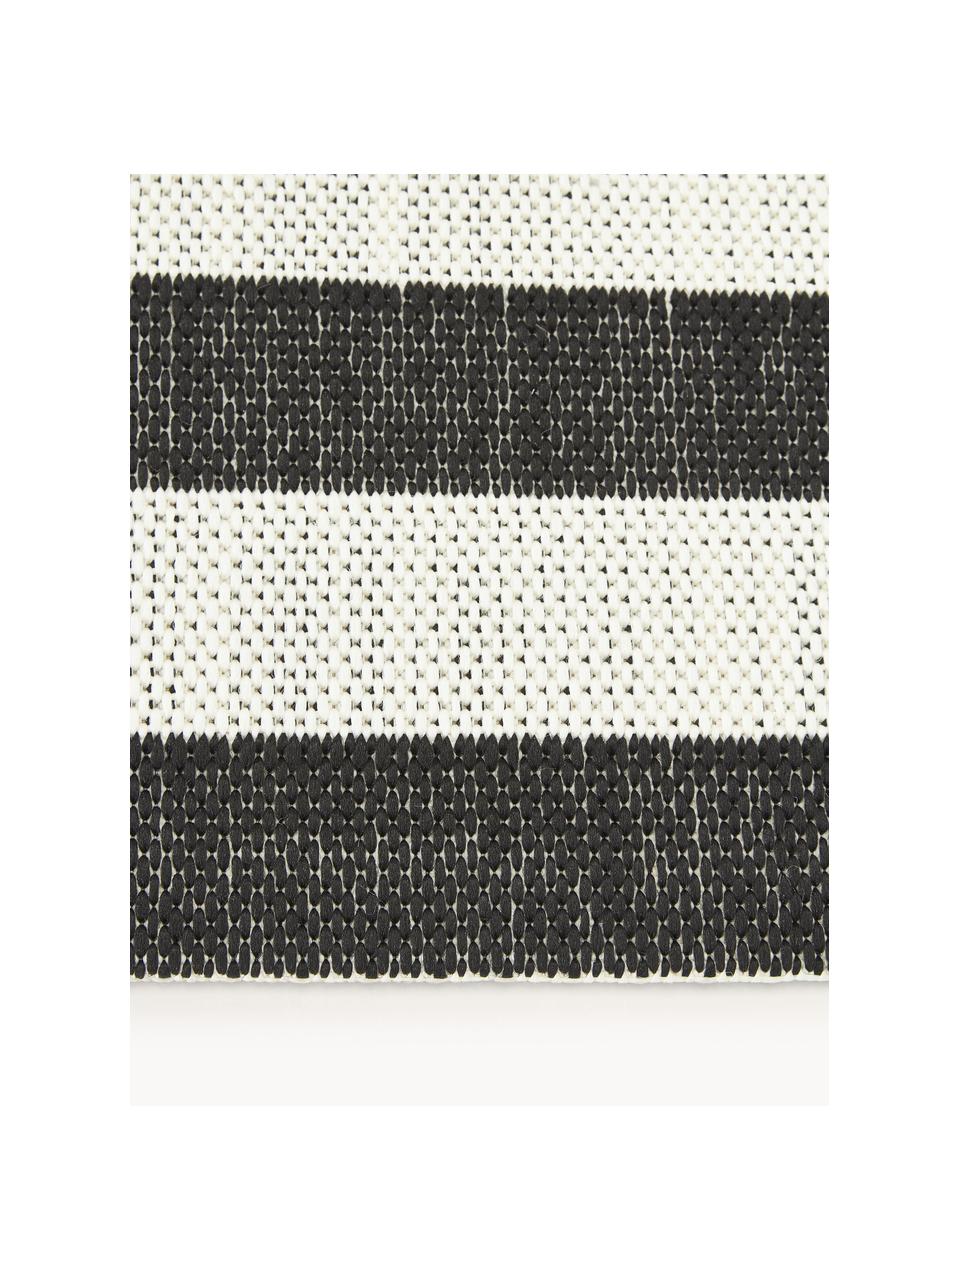 Pruhovaný interiérový/exteriérový koberec Axa, 70 % polypropylen, 30 % polyester, Tlumeně bílá, černá, Š 200 cm, D 290 cm (velikost L)